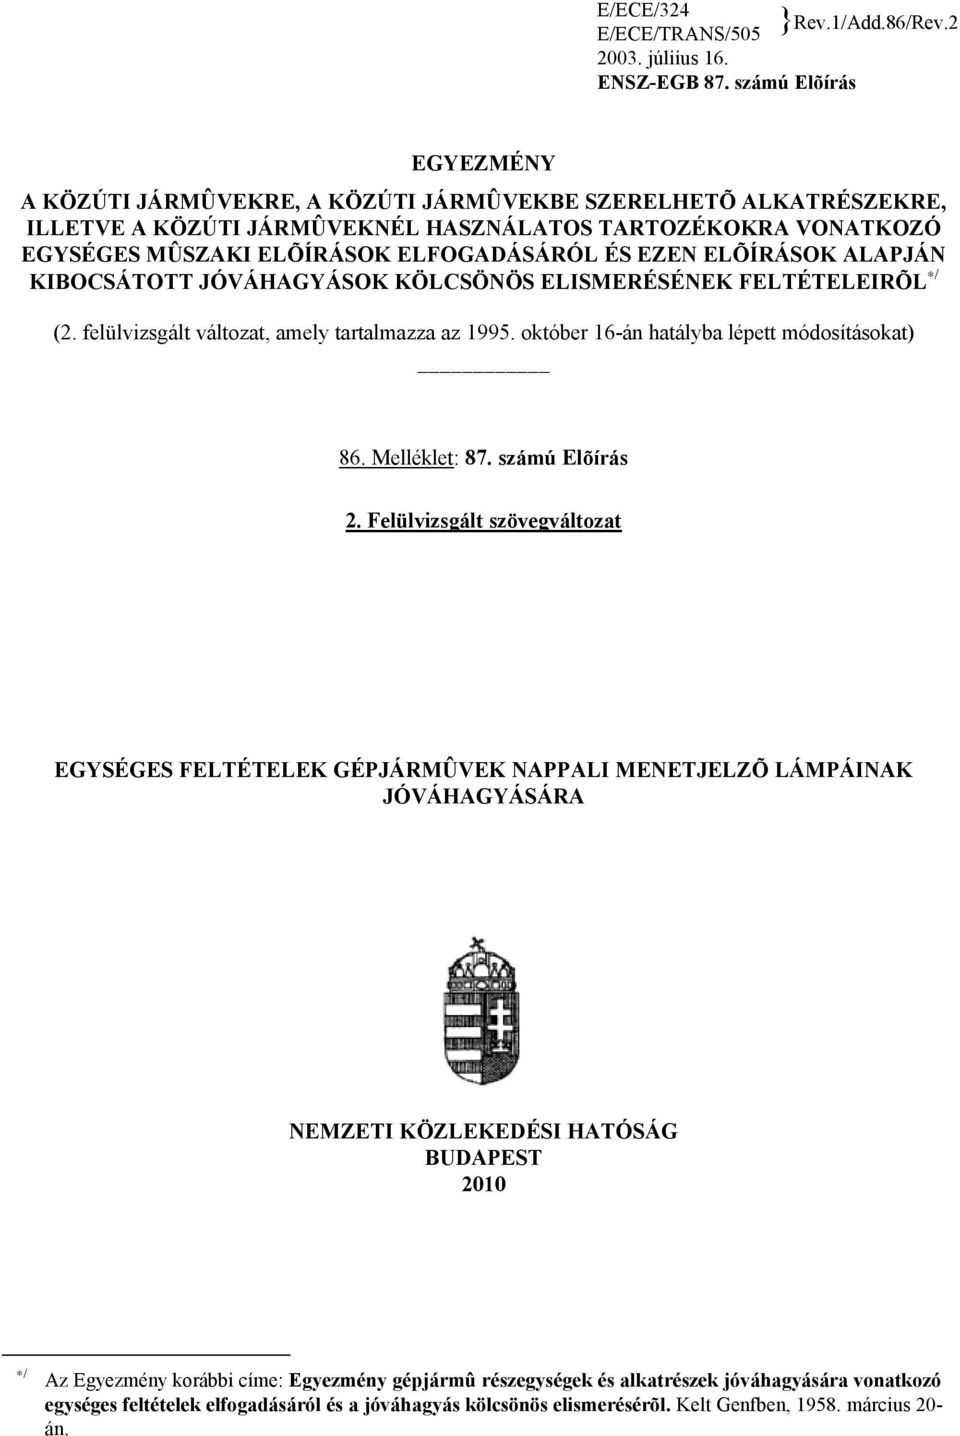 EZEN ELÕÍRÁSOK ALAPJÁN KIBOCSÁTOTT JÓVÁHAGYÁSOK KÖLCSÖNÖS ELISMERÉSÉNEK FELTÉTELEIRÕL / (2. felülvizsgált változat, amely tartalmazza az 1995. október 16-án hatályba lépett módosításokat) 86.